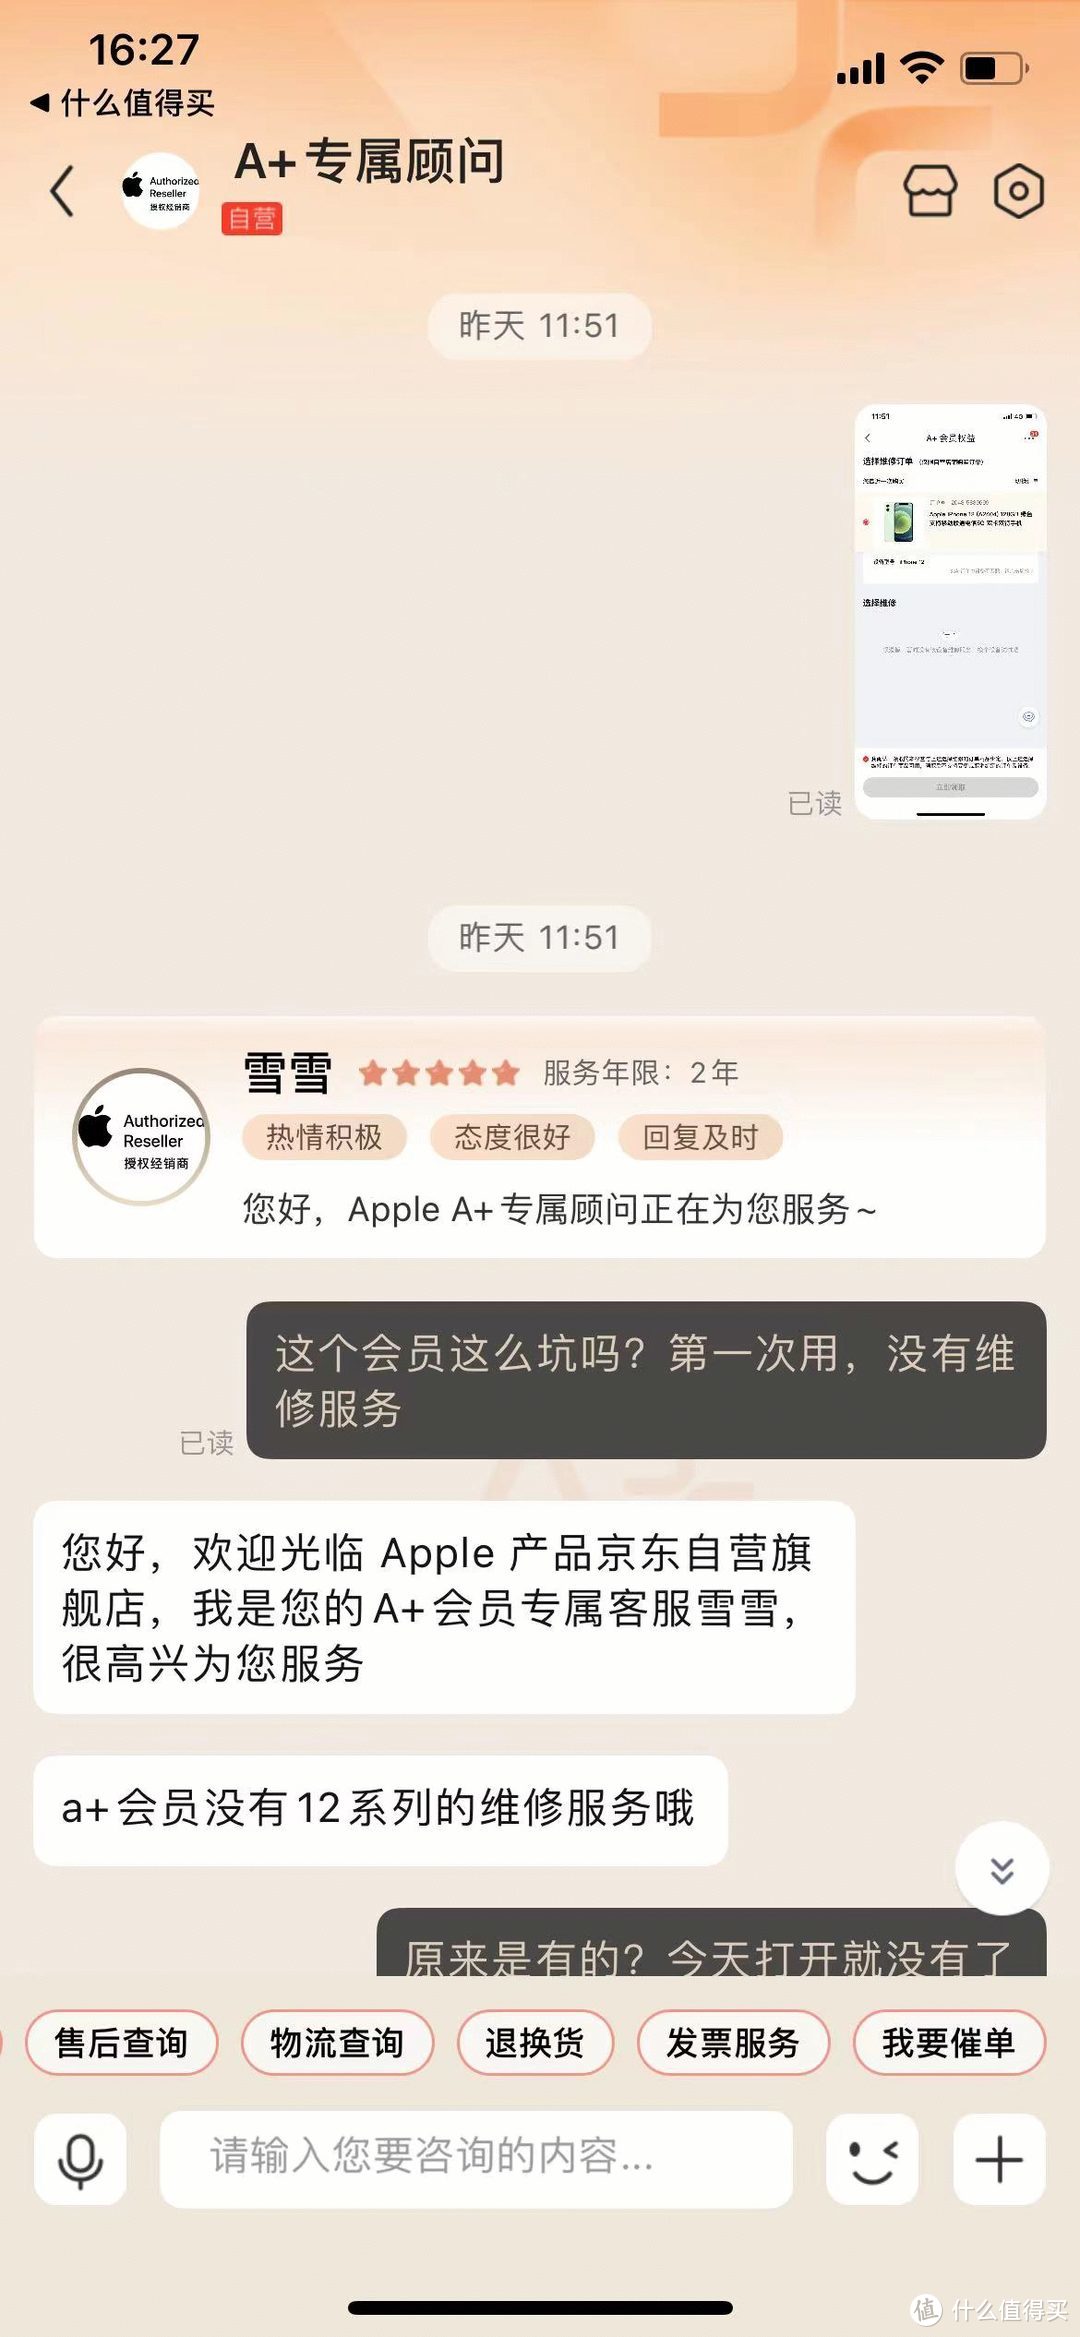 京东apple A+会员，99块钱白花了，服务期限内更改服务内容，霸王条款，损害消费者利益